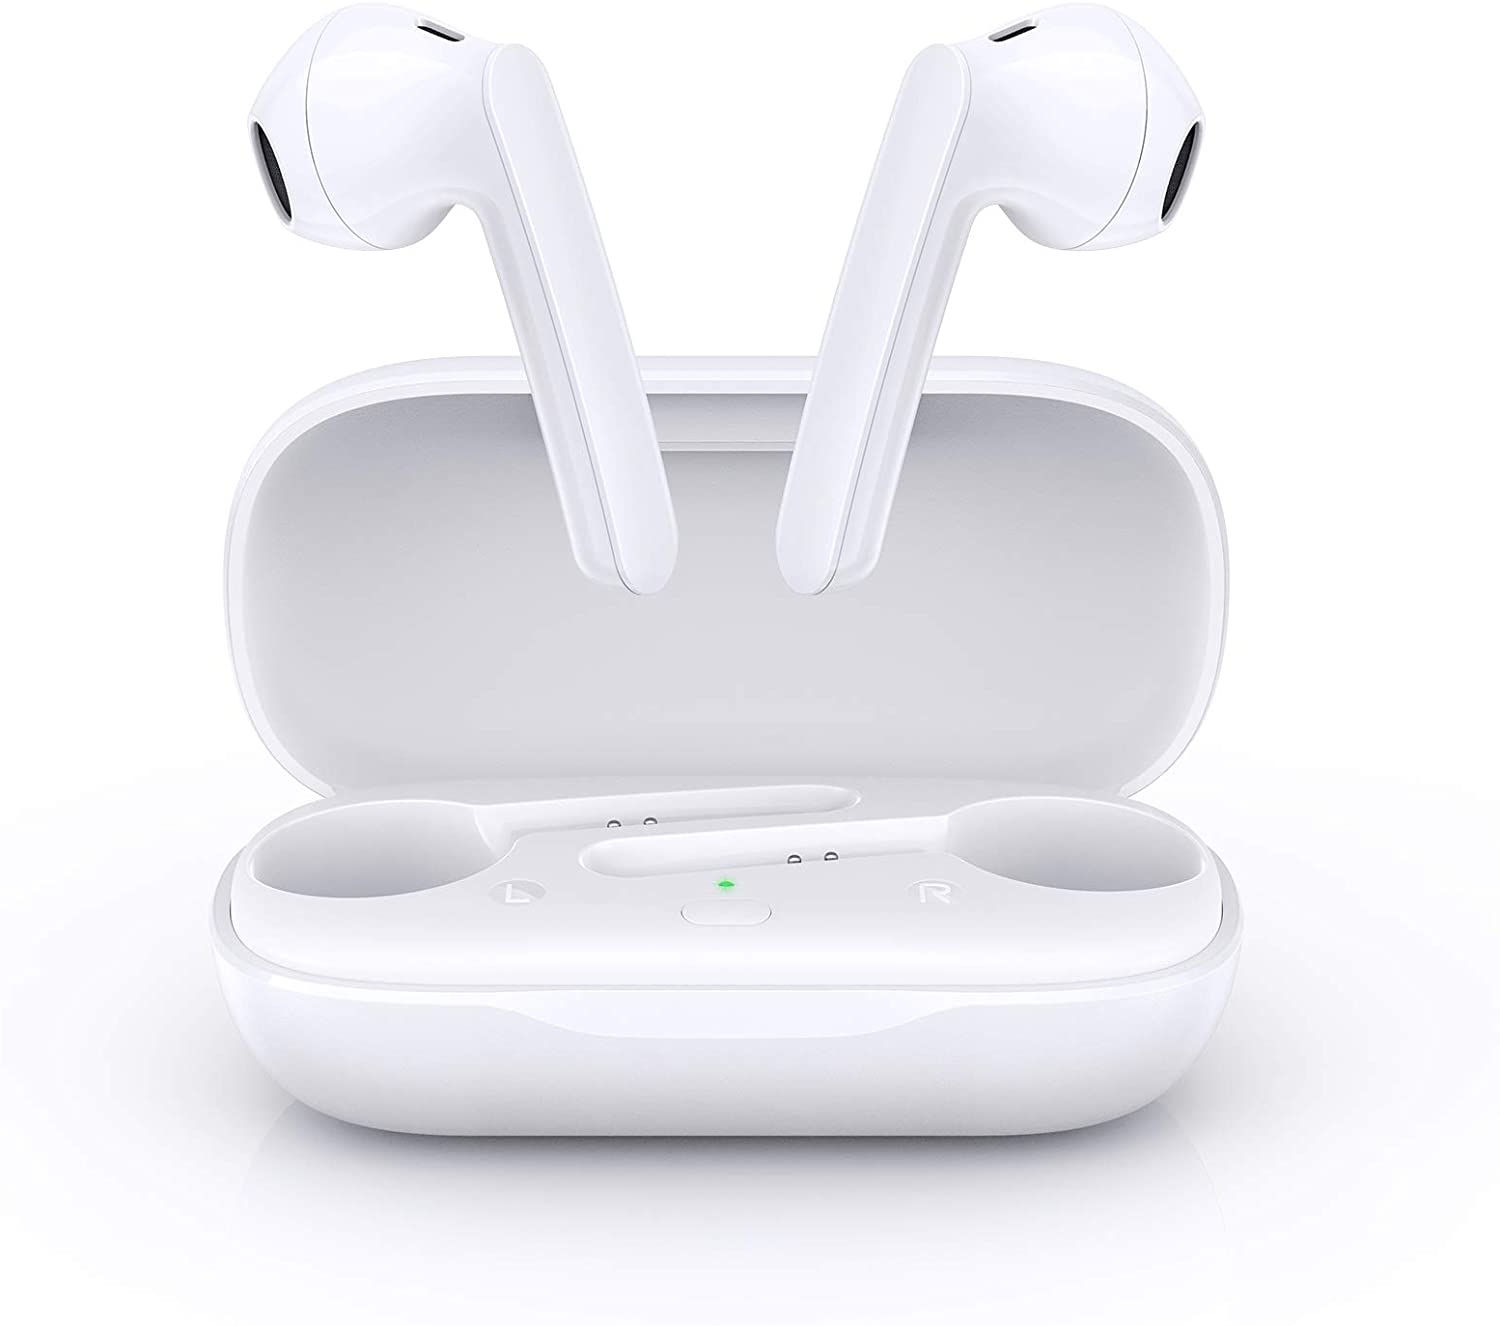 Bild zu BCMASTER In-Ear Bluetooth Kopfhörer mit Berührungssteuerung für 17,99€